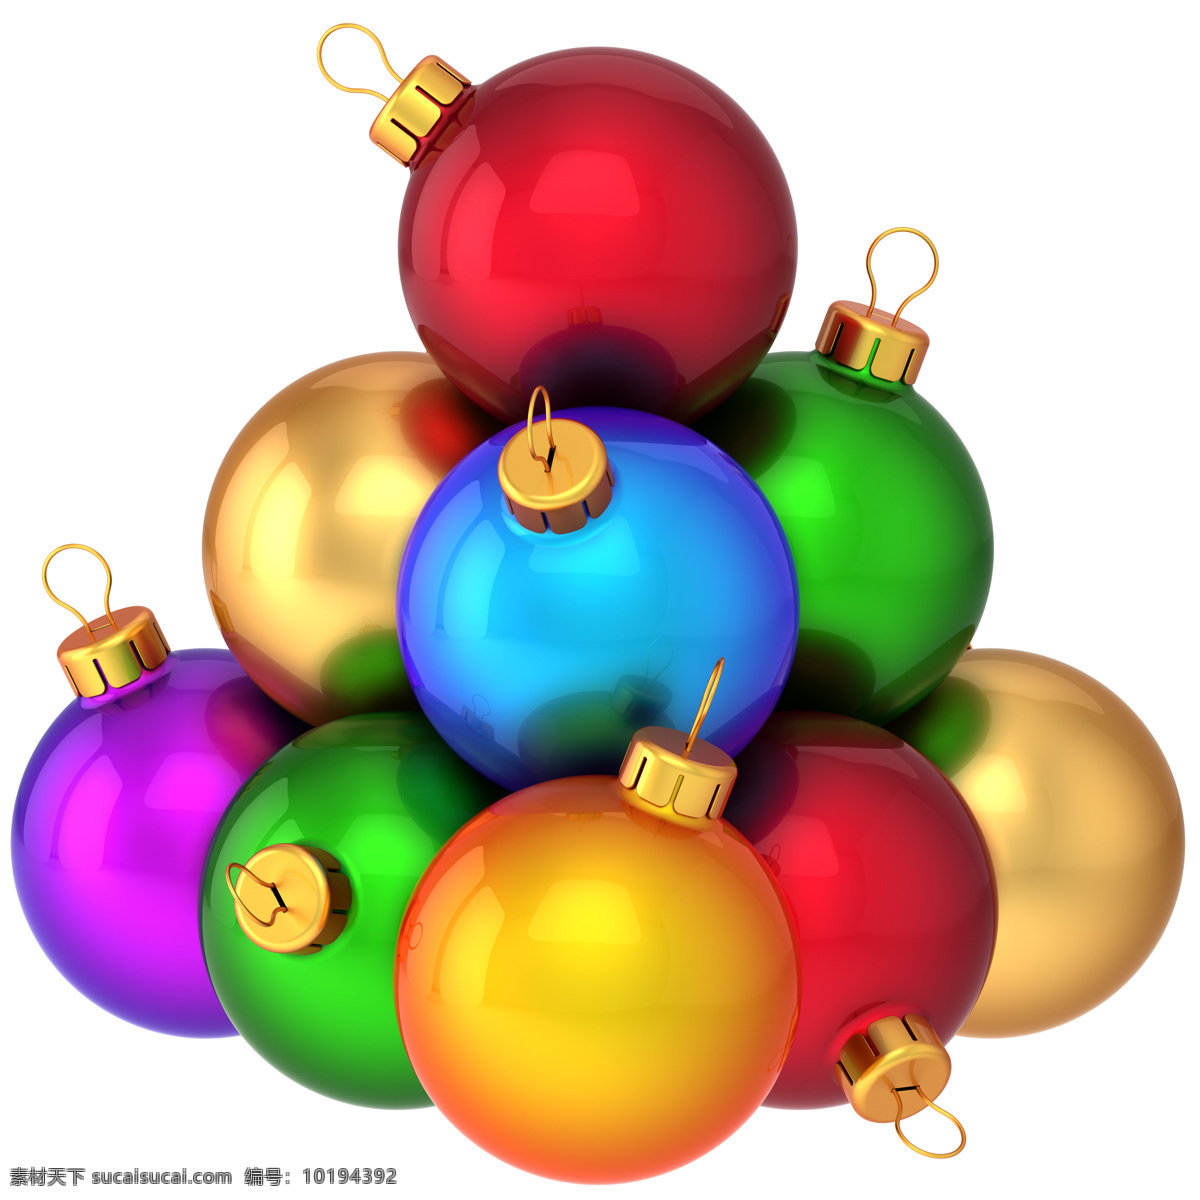 彩色 圣诞球 圣诞节饰品 圣诞节素材 圣诞节元素 节日庆典 生活百科